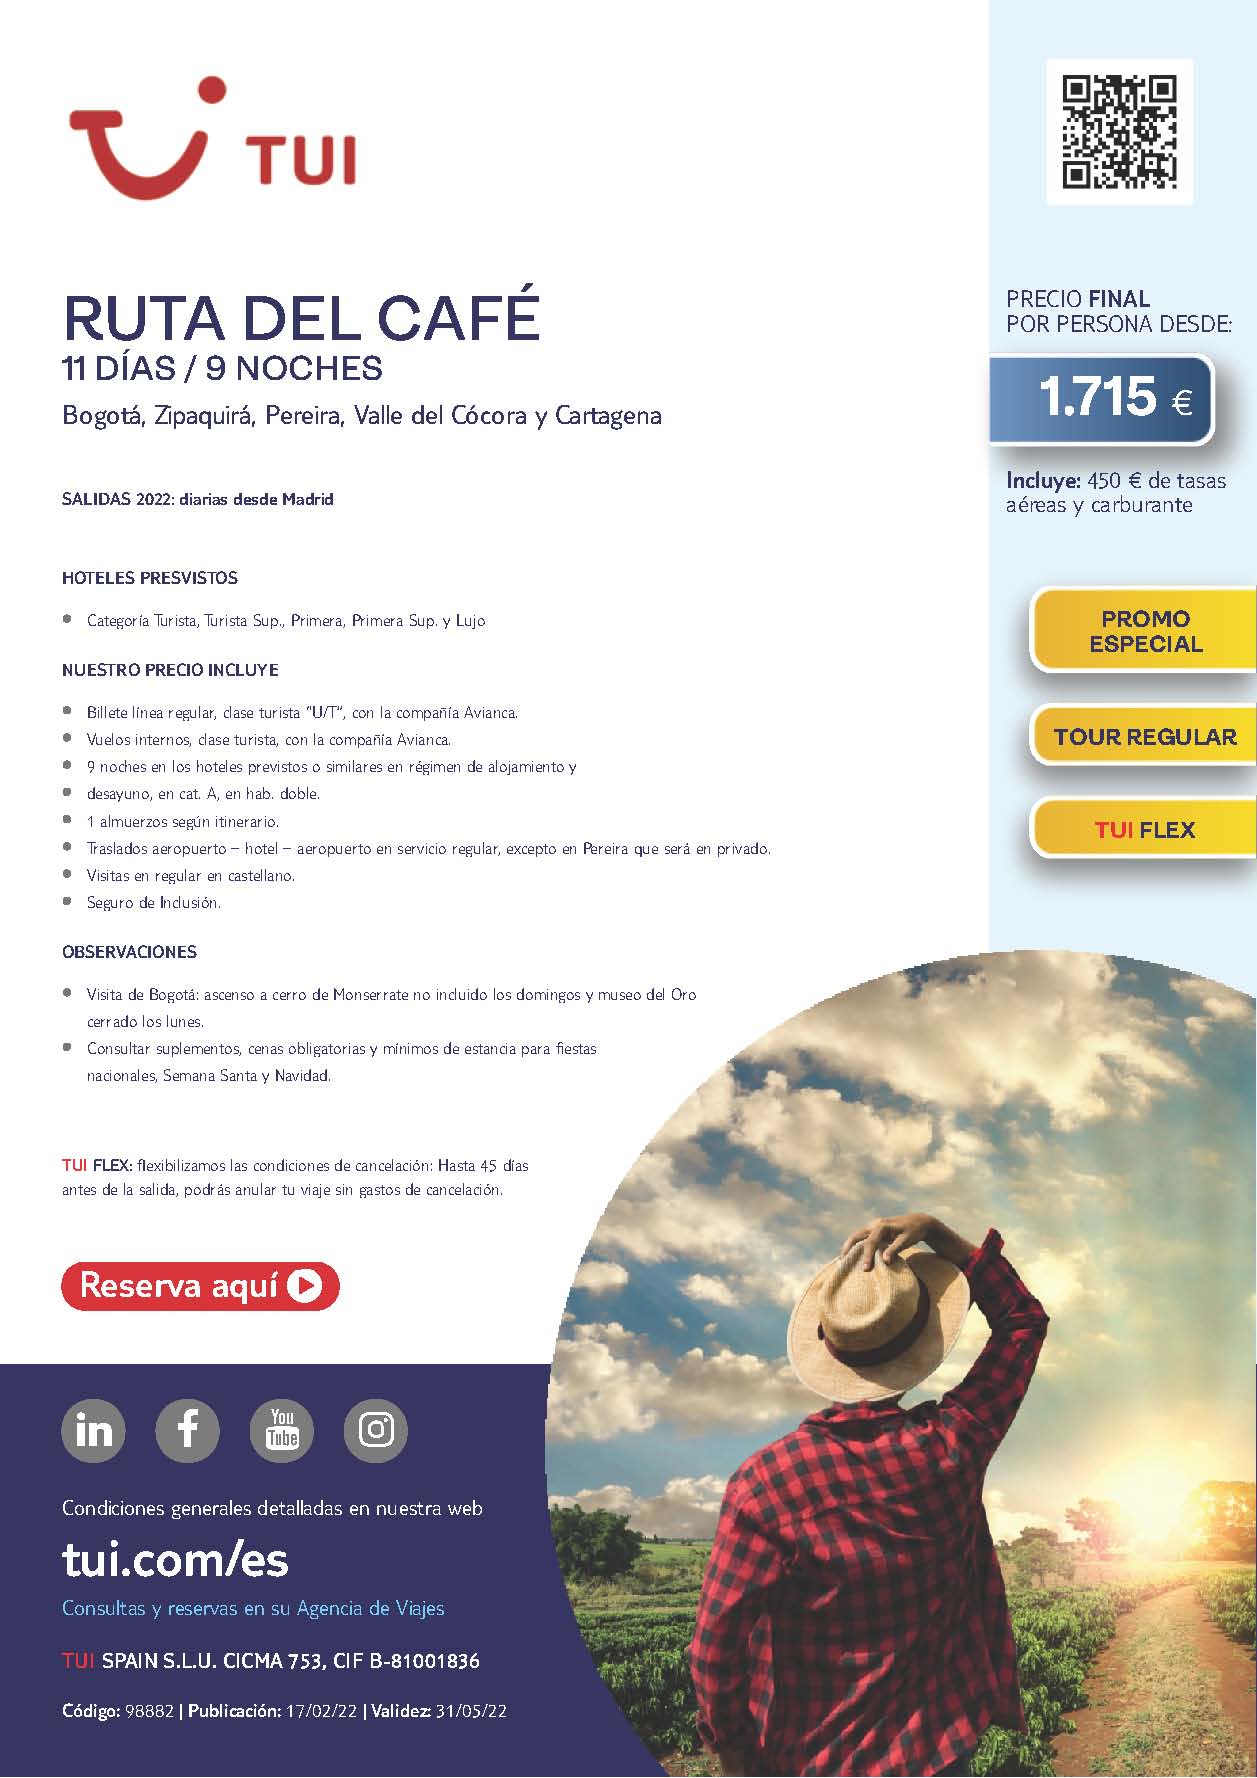 Oferta TUI Primavera 2022 Colombia Ruta del Cafe 11 dias salidas desde Madrid vuelos directos Iberia